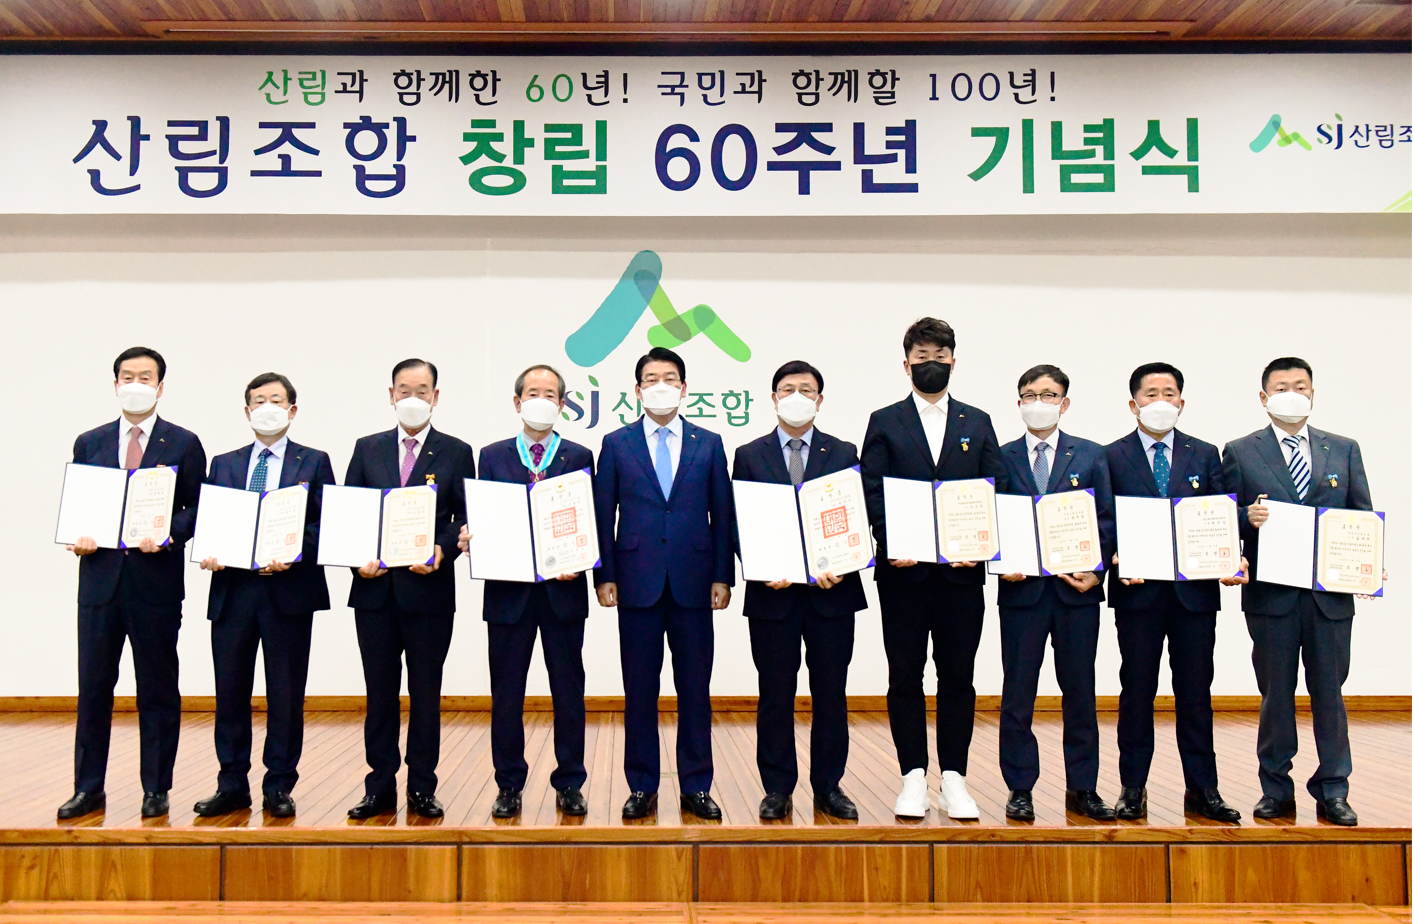  창립 60주년 기념식 개최 